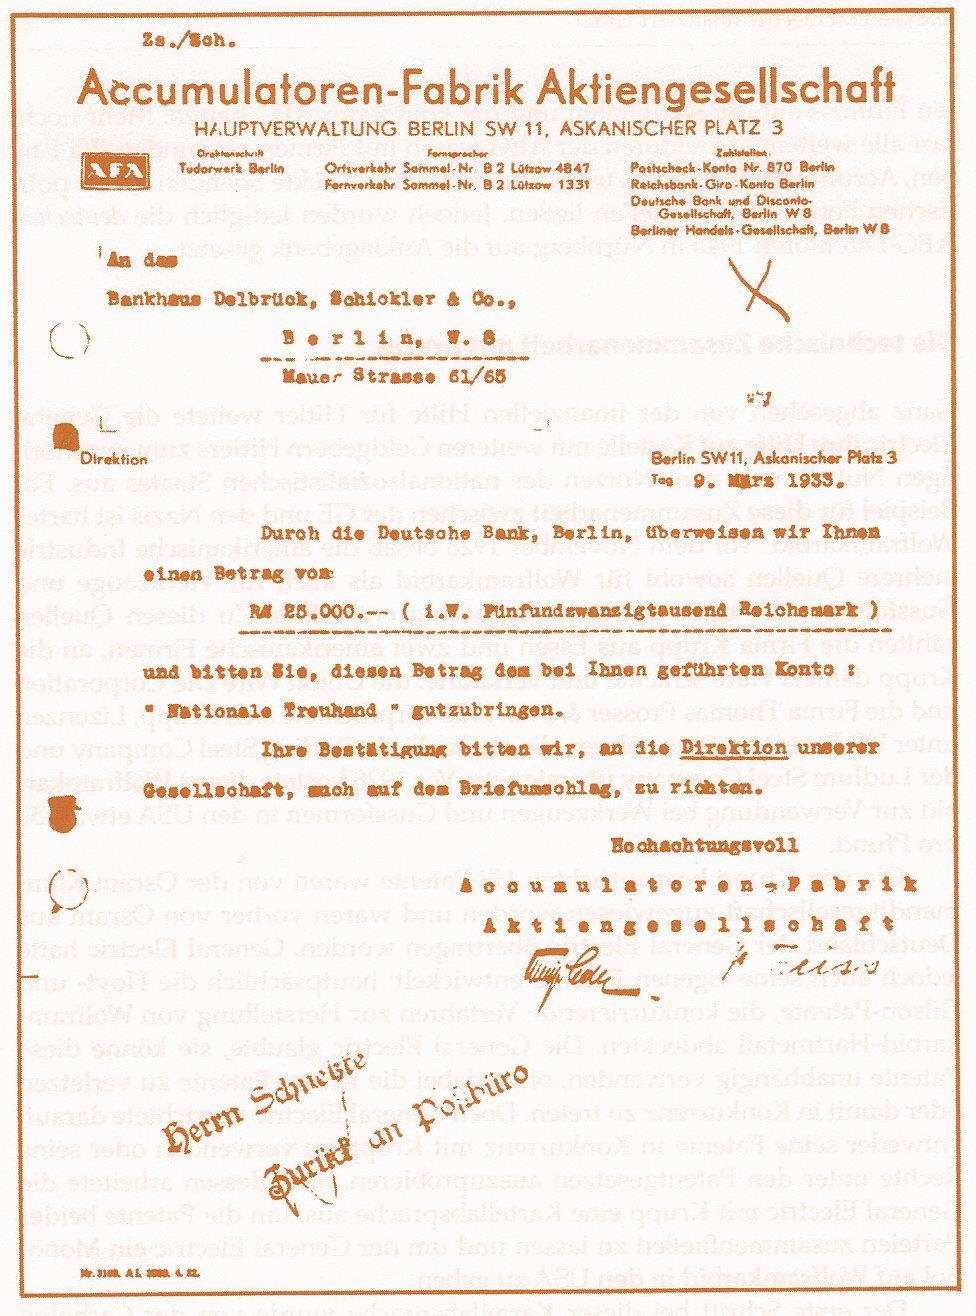 Originalüberweisungsbeleg, datiert vom 9. März 1933, von der Accumulatorenfabrik an das Berliner Bankhaus Delbrück, Schickler & Co., mit der Anweisung, 25.